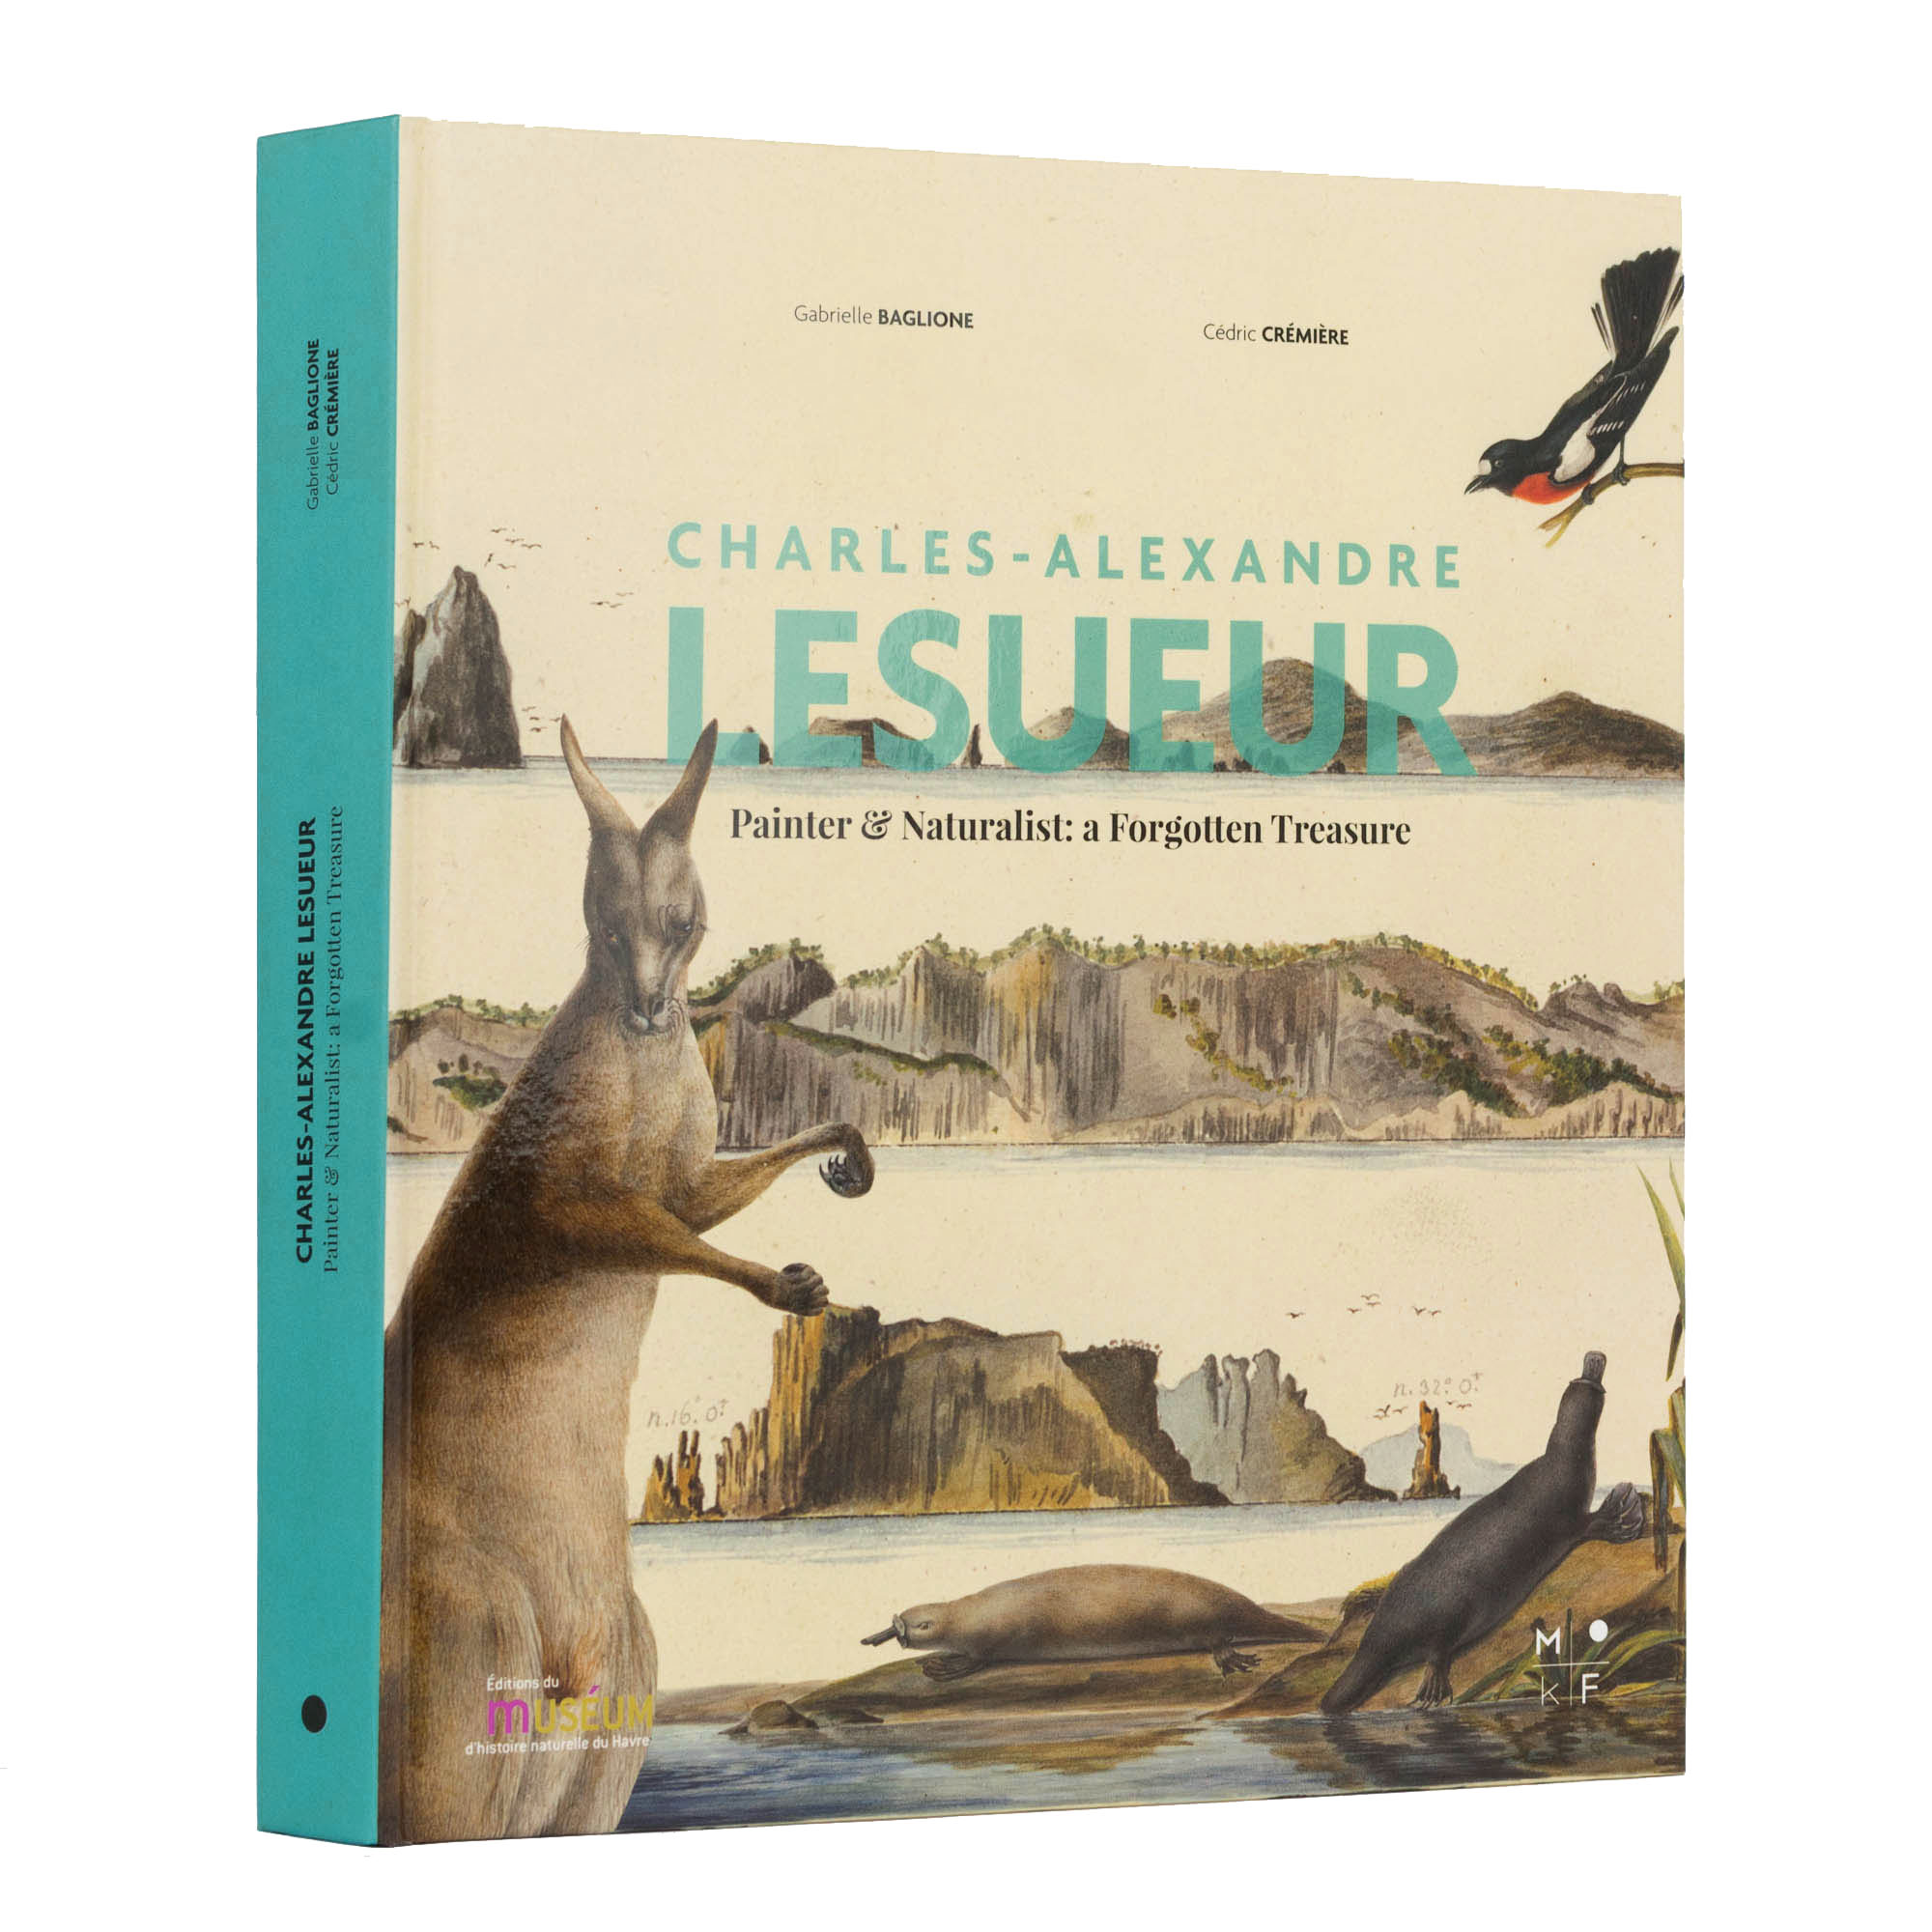 Couverture du livre Charles-Alexandre Lesueur, peintre voyageur : un trsor oubli